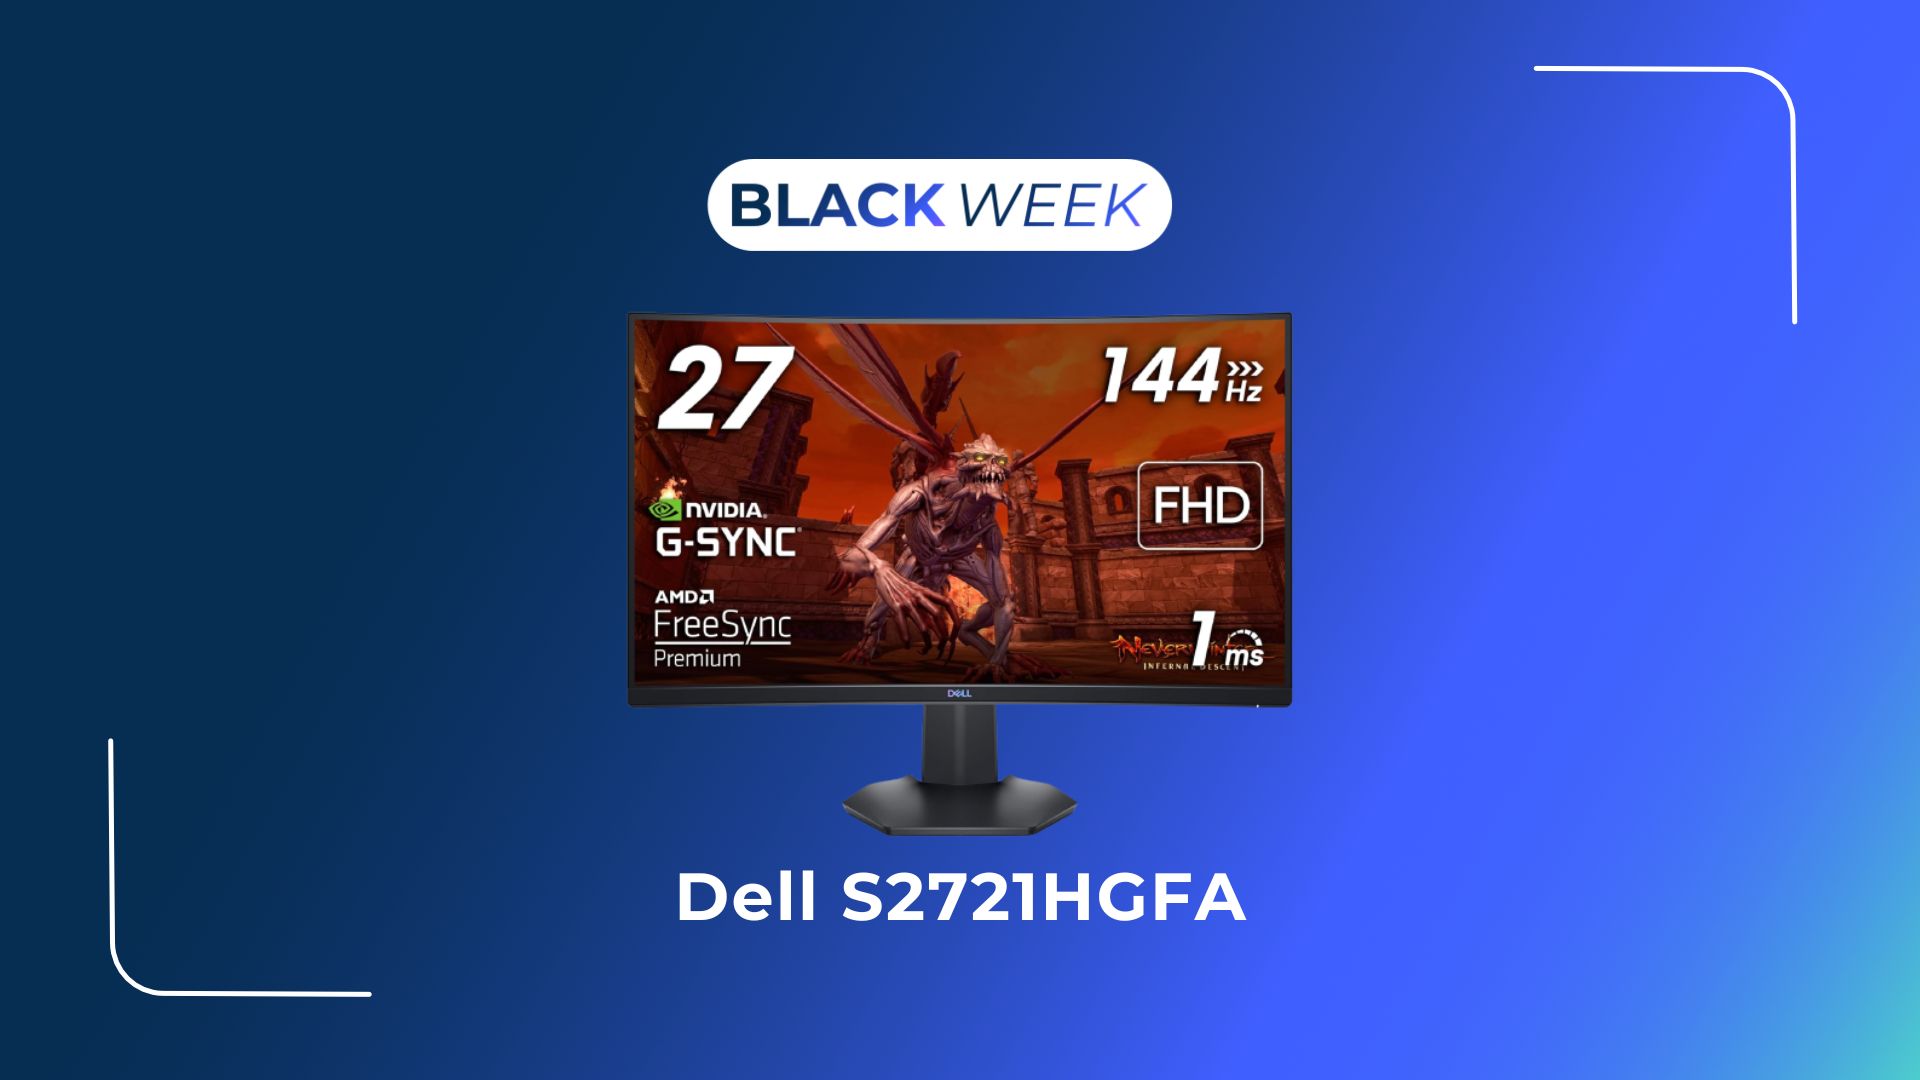 Écran de gaming incurvé Full HD Dell 24 pouces - G2422HS